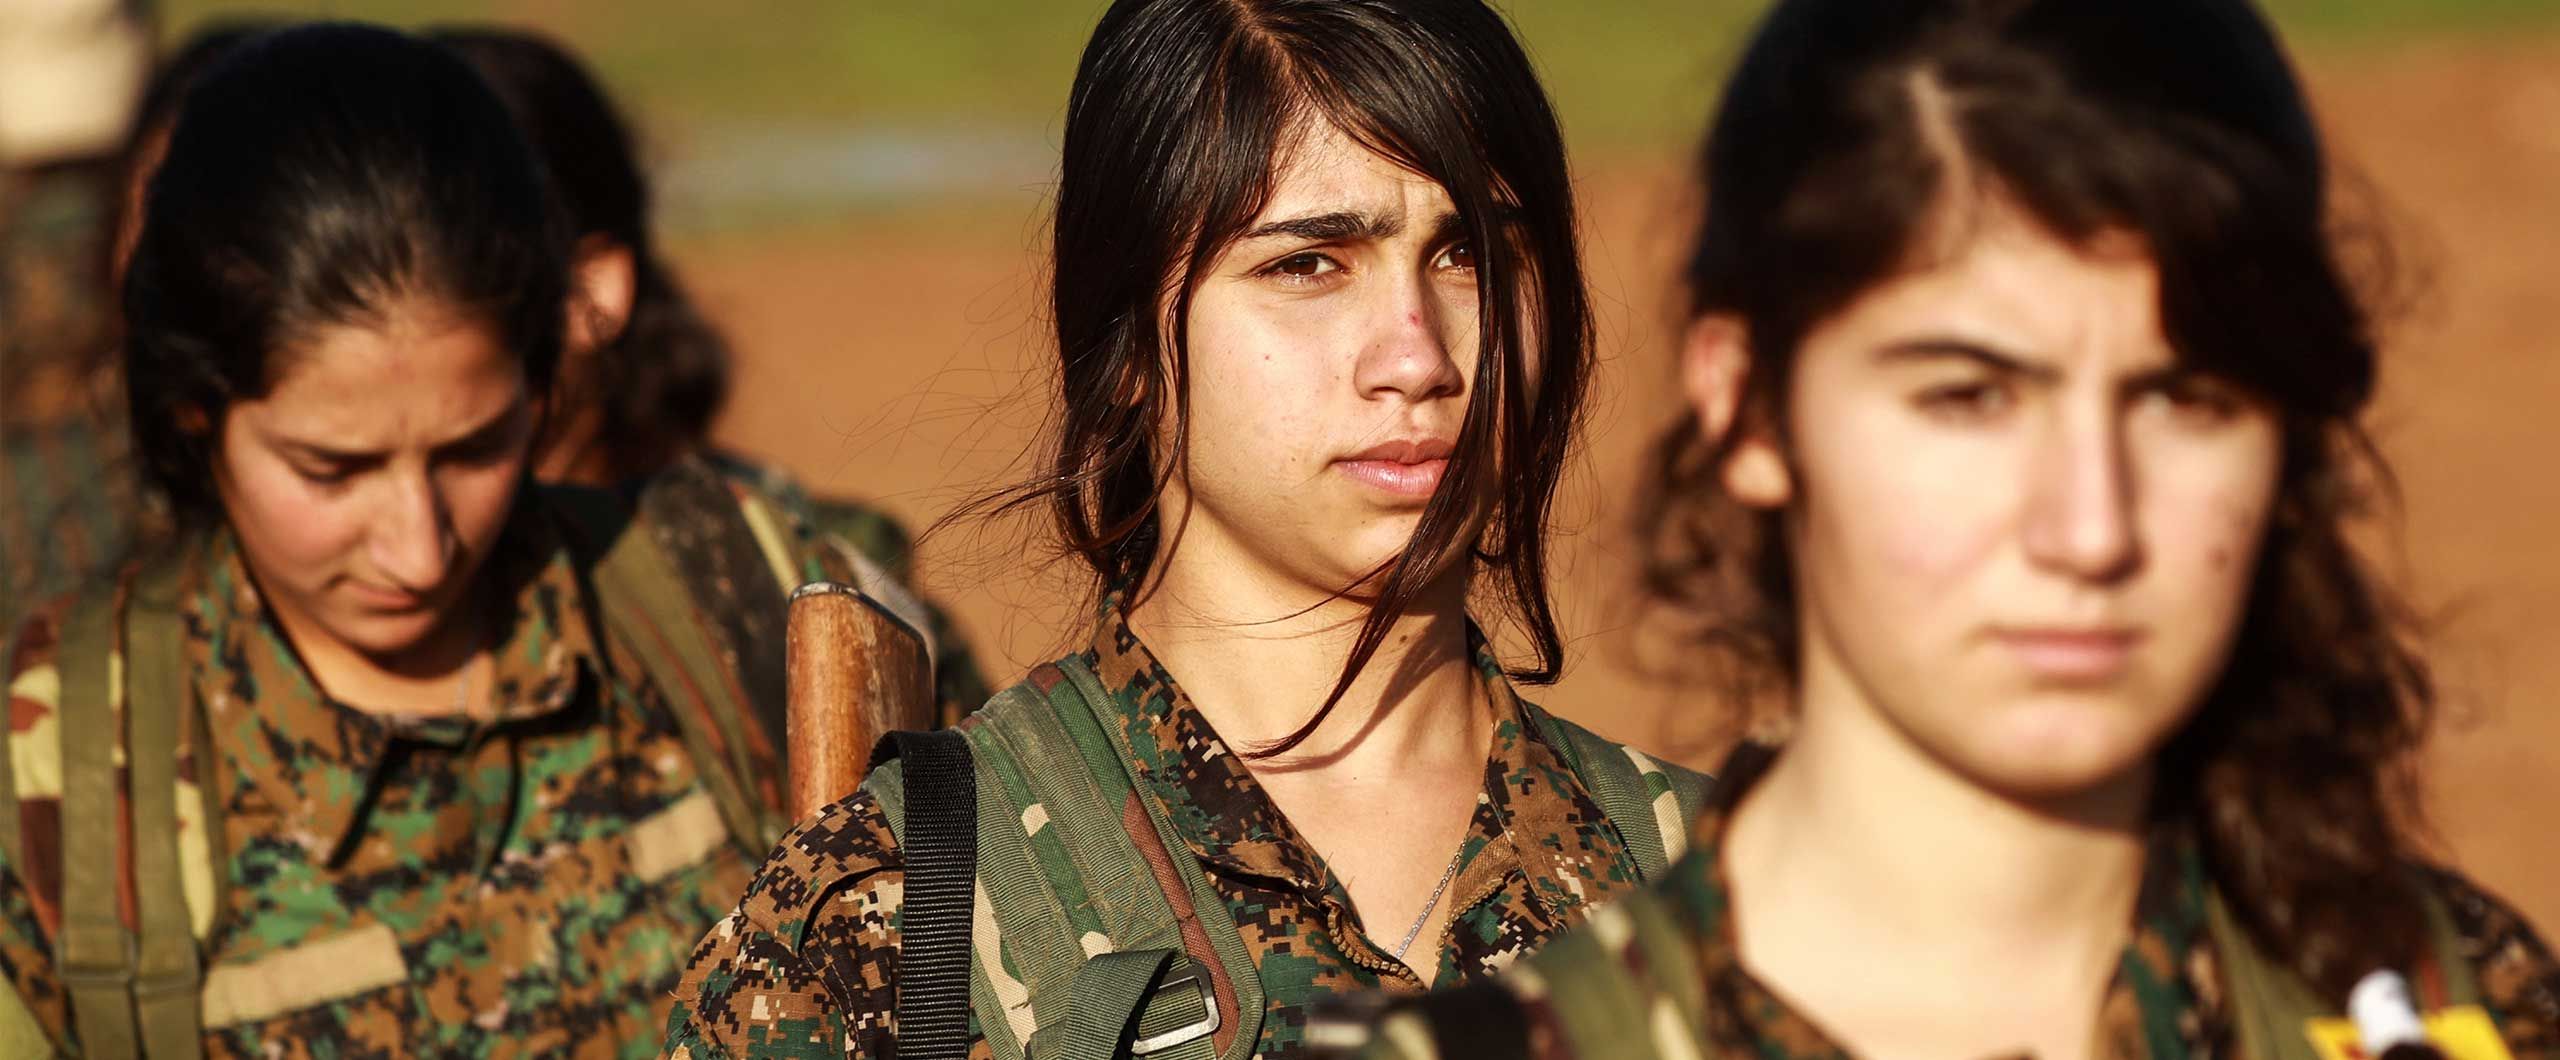 Hot Kurdish Girls